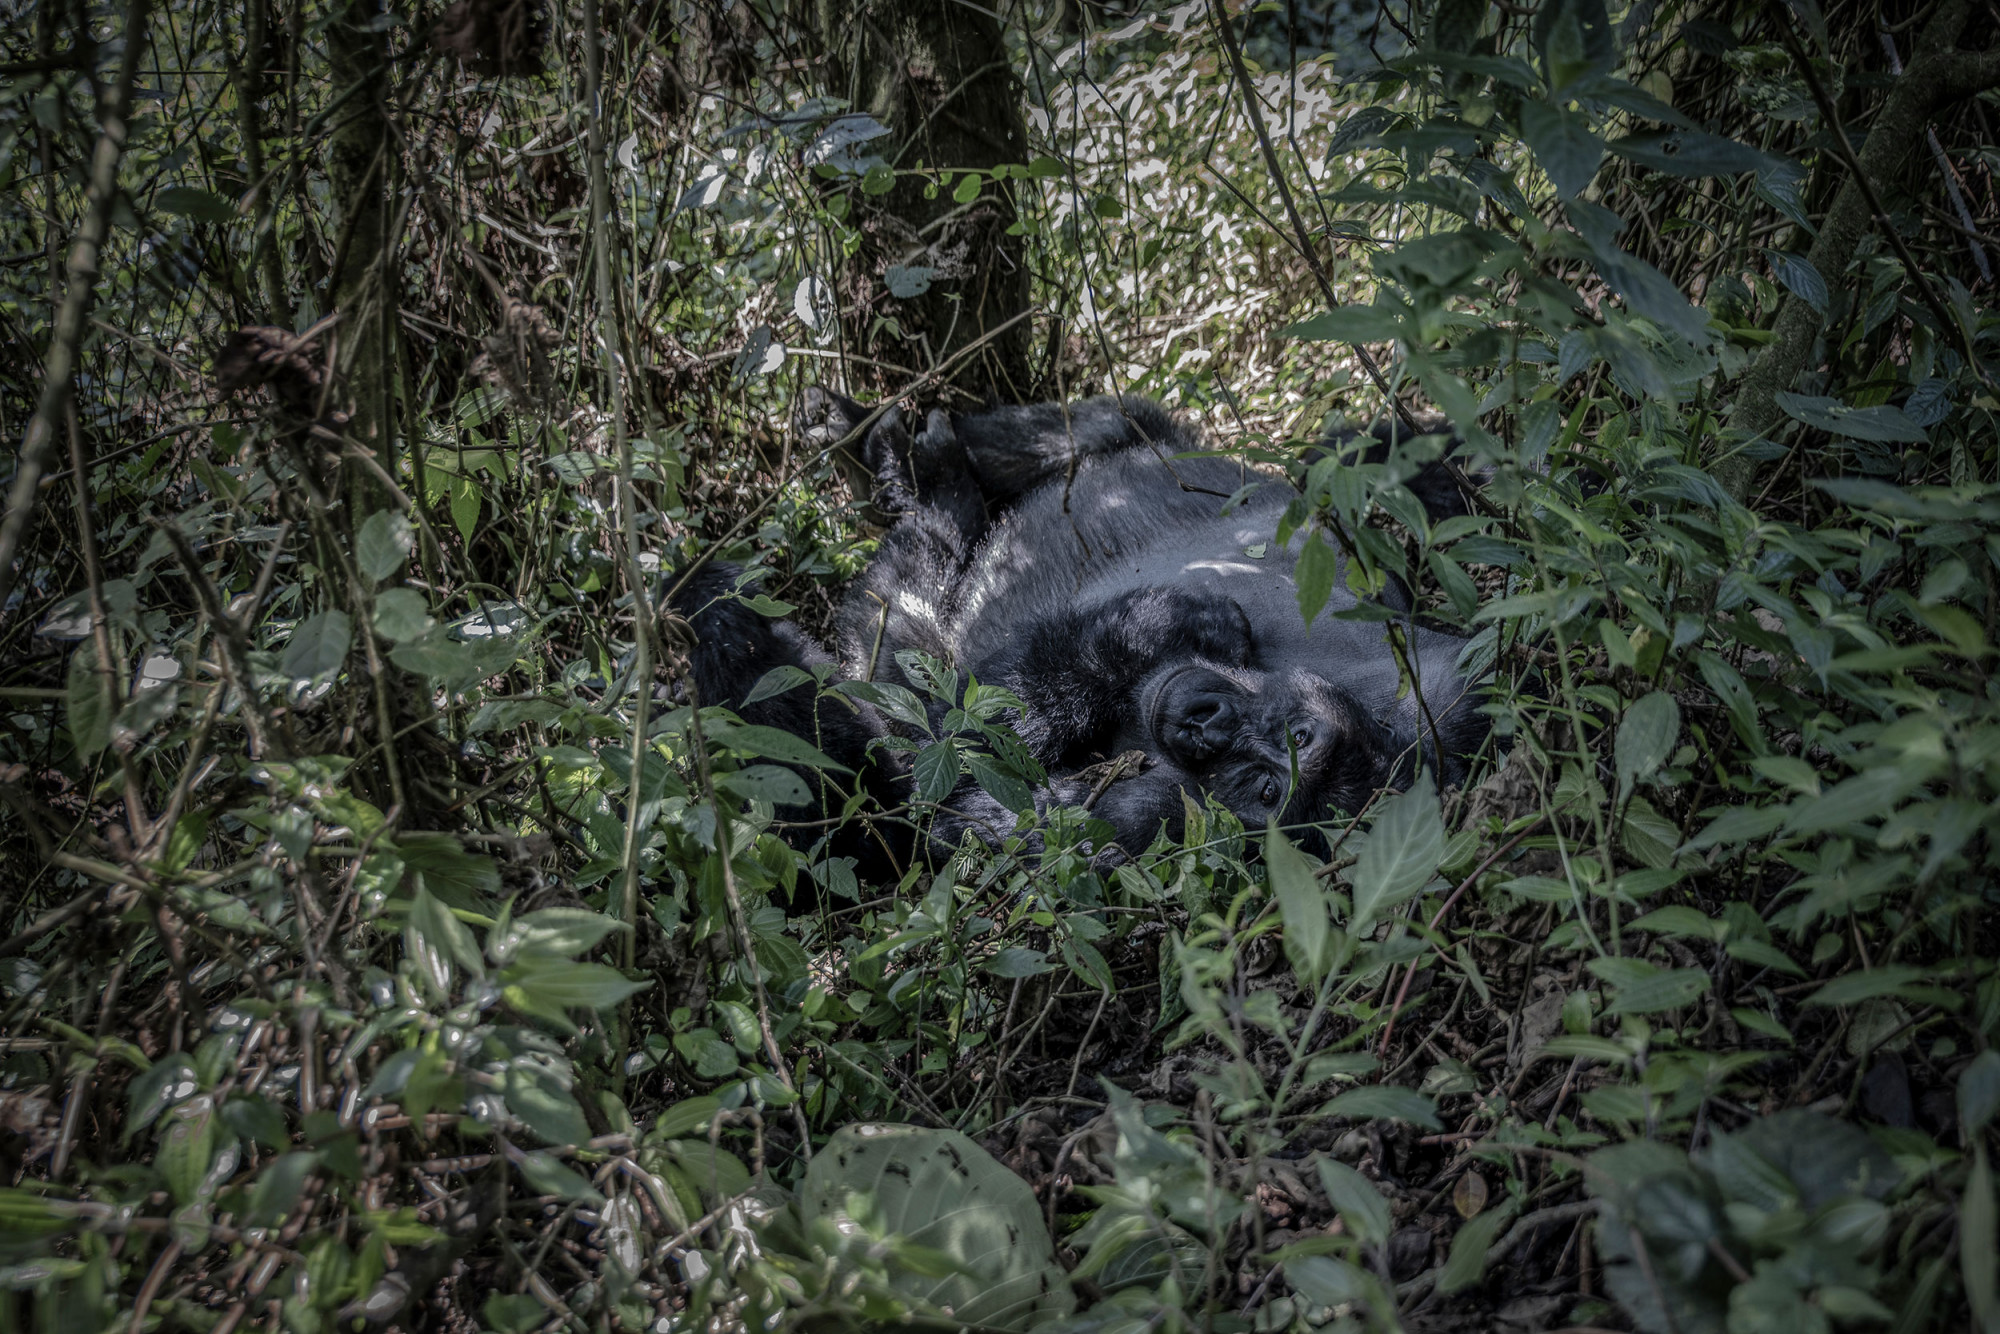 Parc national de Kahuzi-Biega, 5 septembre 2021. Bonane, 250 kg, l’un des 14 gorilles dominants suivis par des écogardes et habitués à la présence humaine, se repose dans la forêt. © Guerchom Ndebo pour la Fondation Carmignac.